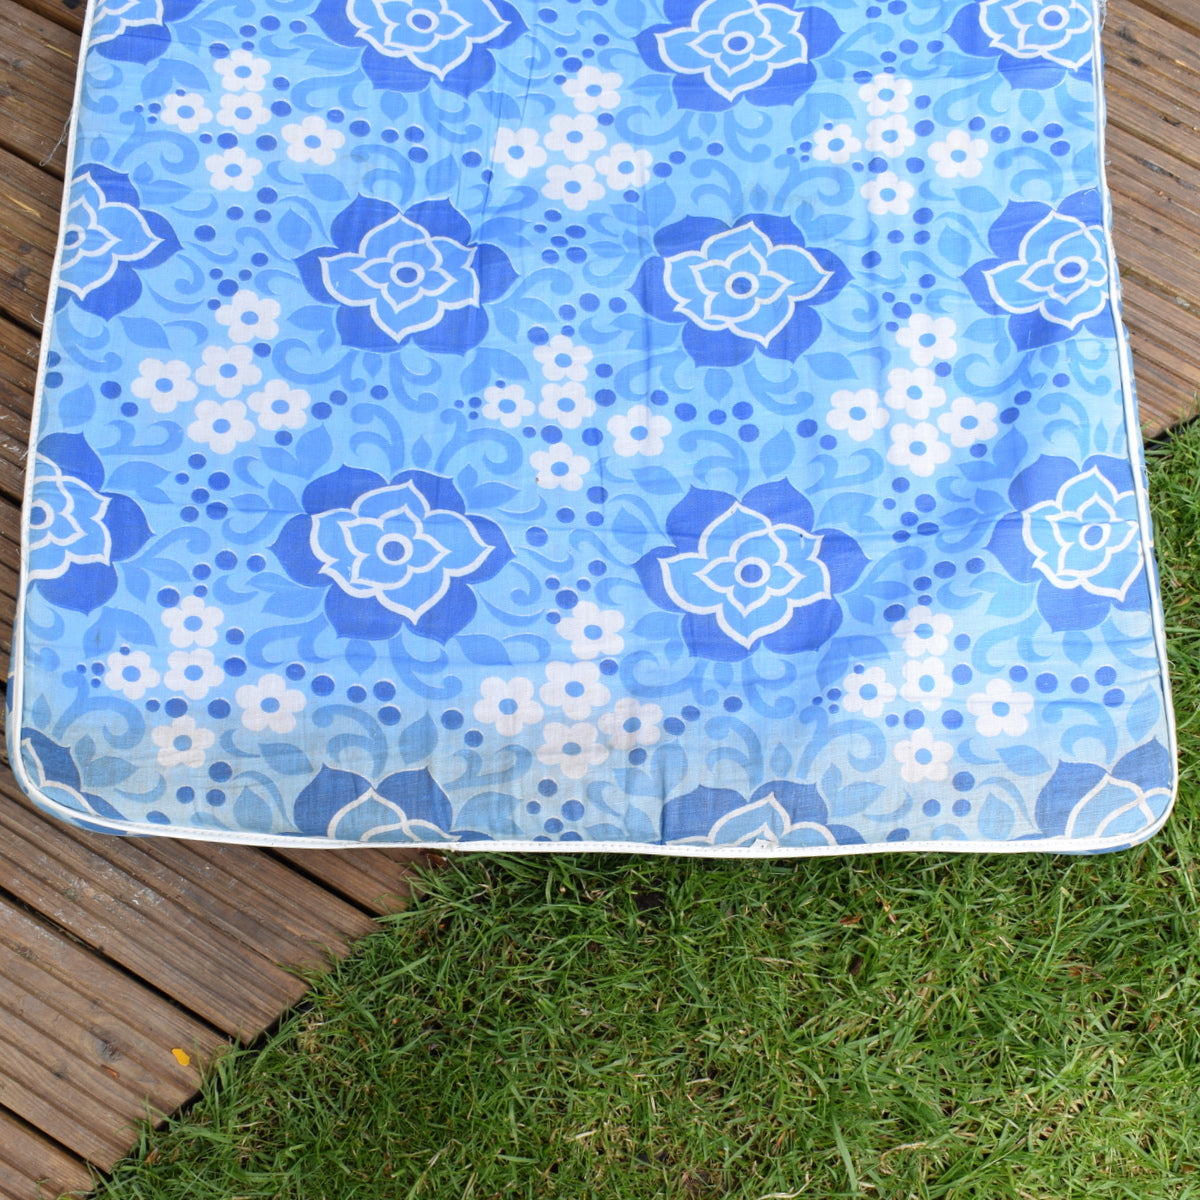 Vintage 1960s Garden Cushion / Mattress - Blue Flower Power